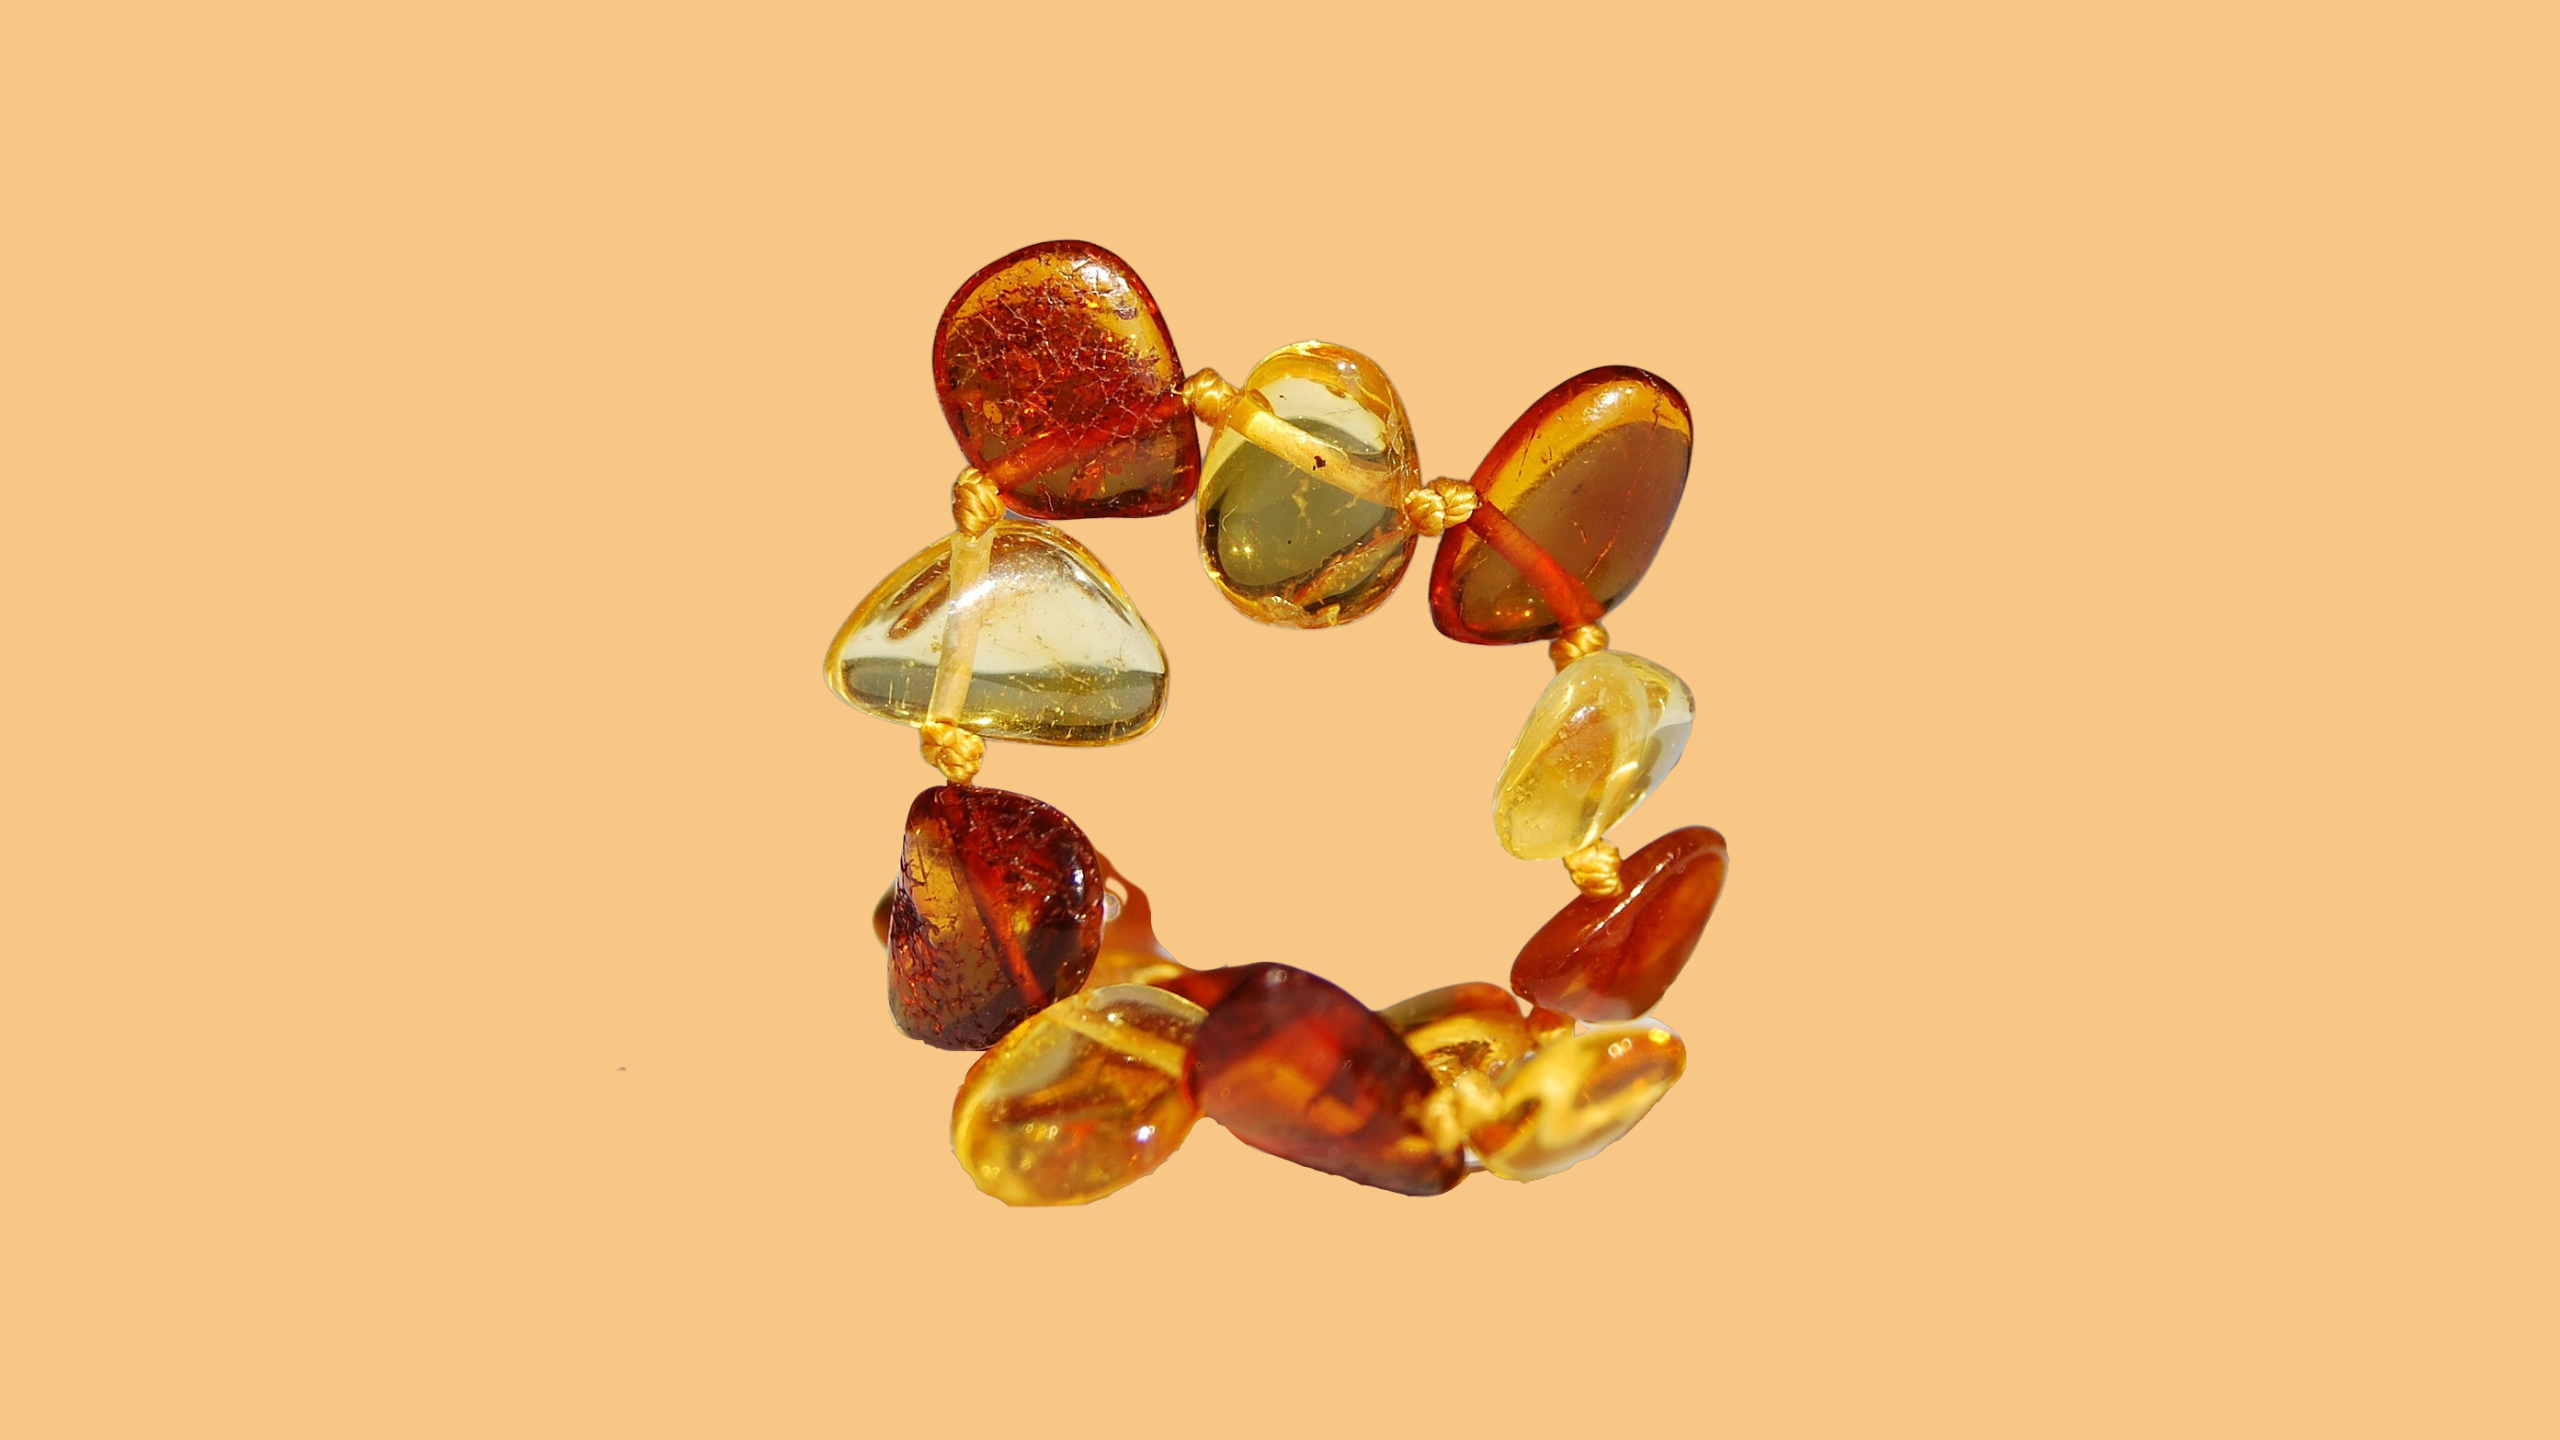 Les colliers d'ambre soulagent-ils les poussées dentaires des bébés ?